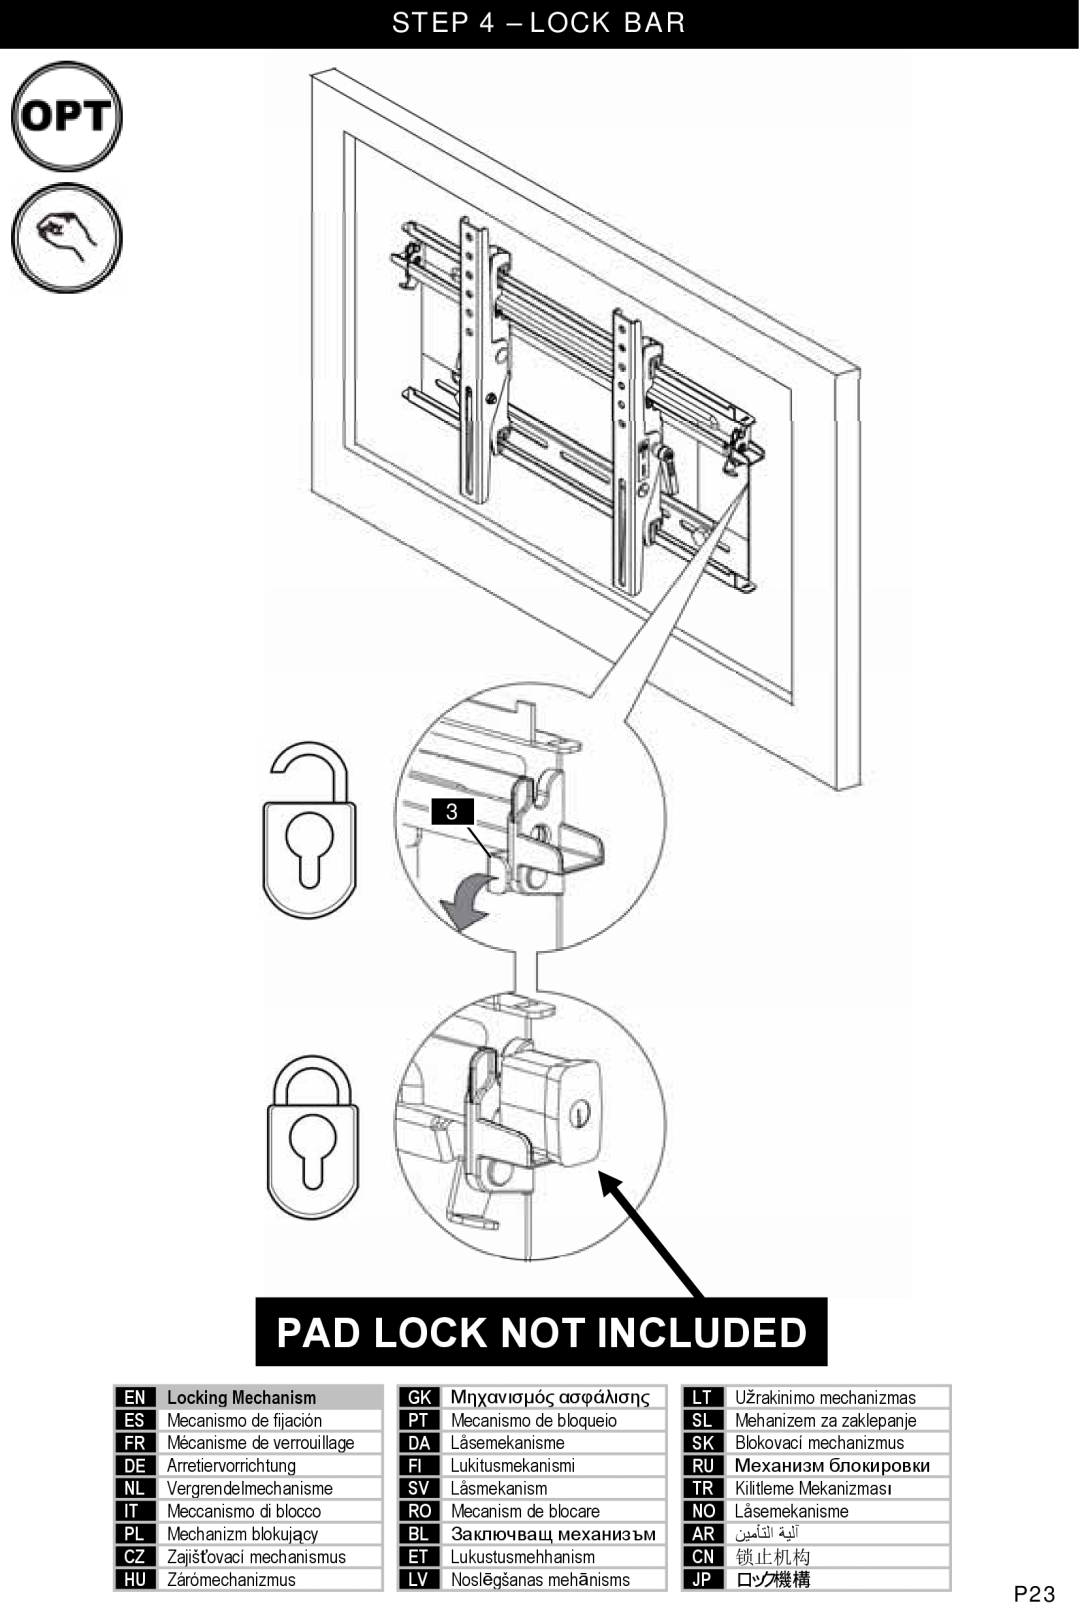 Omnimount NC80-T, OM1004461 manual Lock Bar, Pad Lock Not Included, ﻦﻴﻣﺄﺘﻟا ﺔﻴﻟﺁ, 锁止机构, ロック機構 